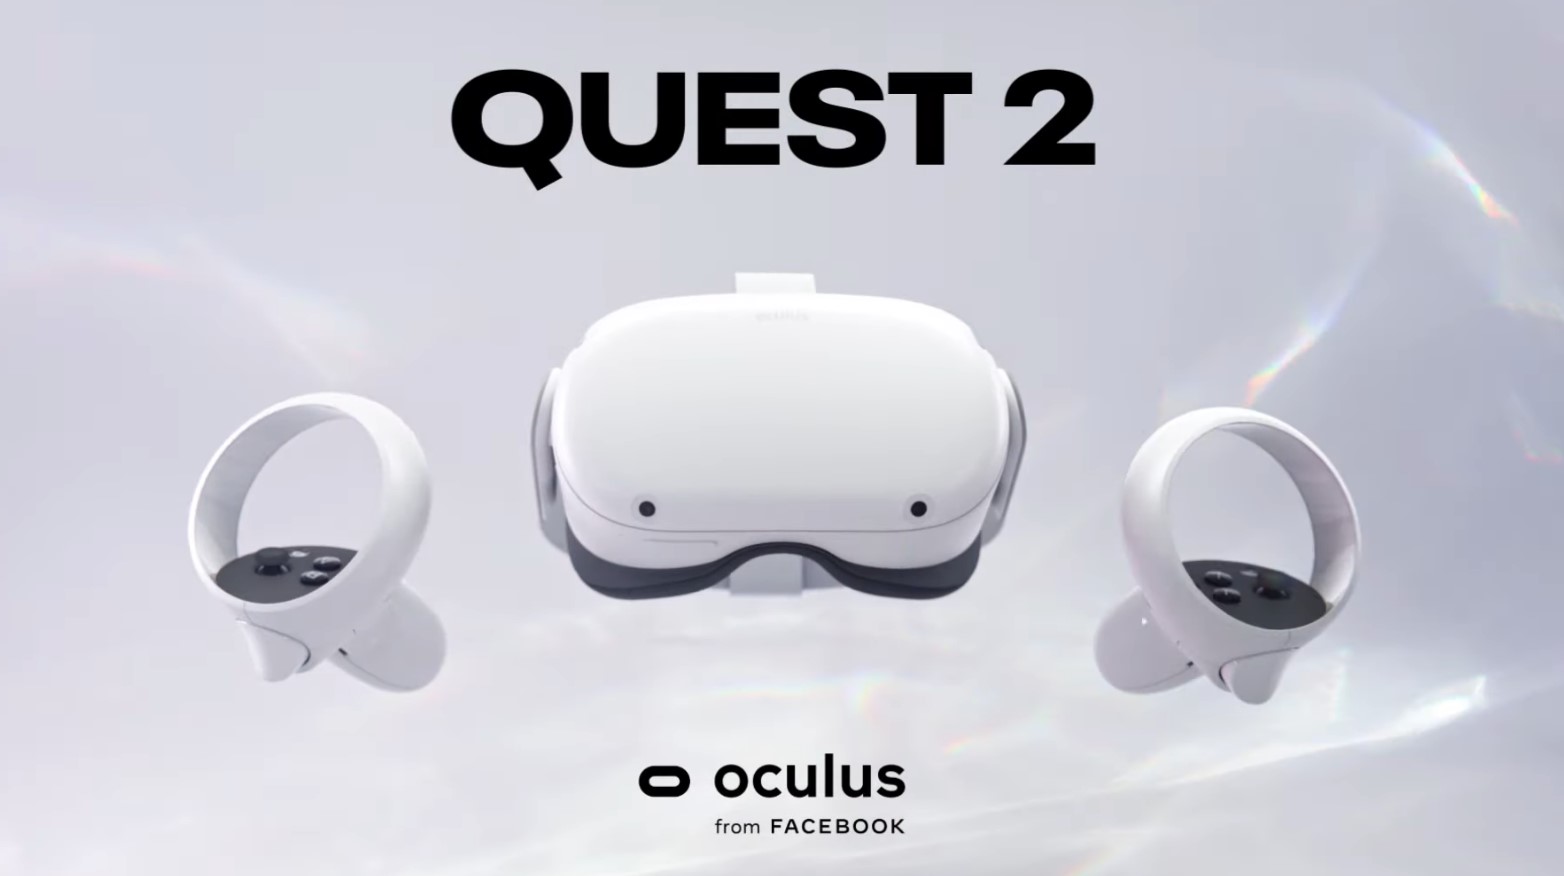 geforce now oculus quest